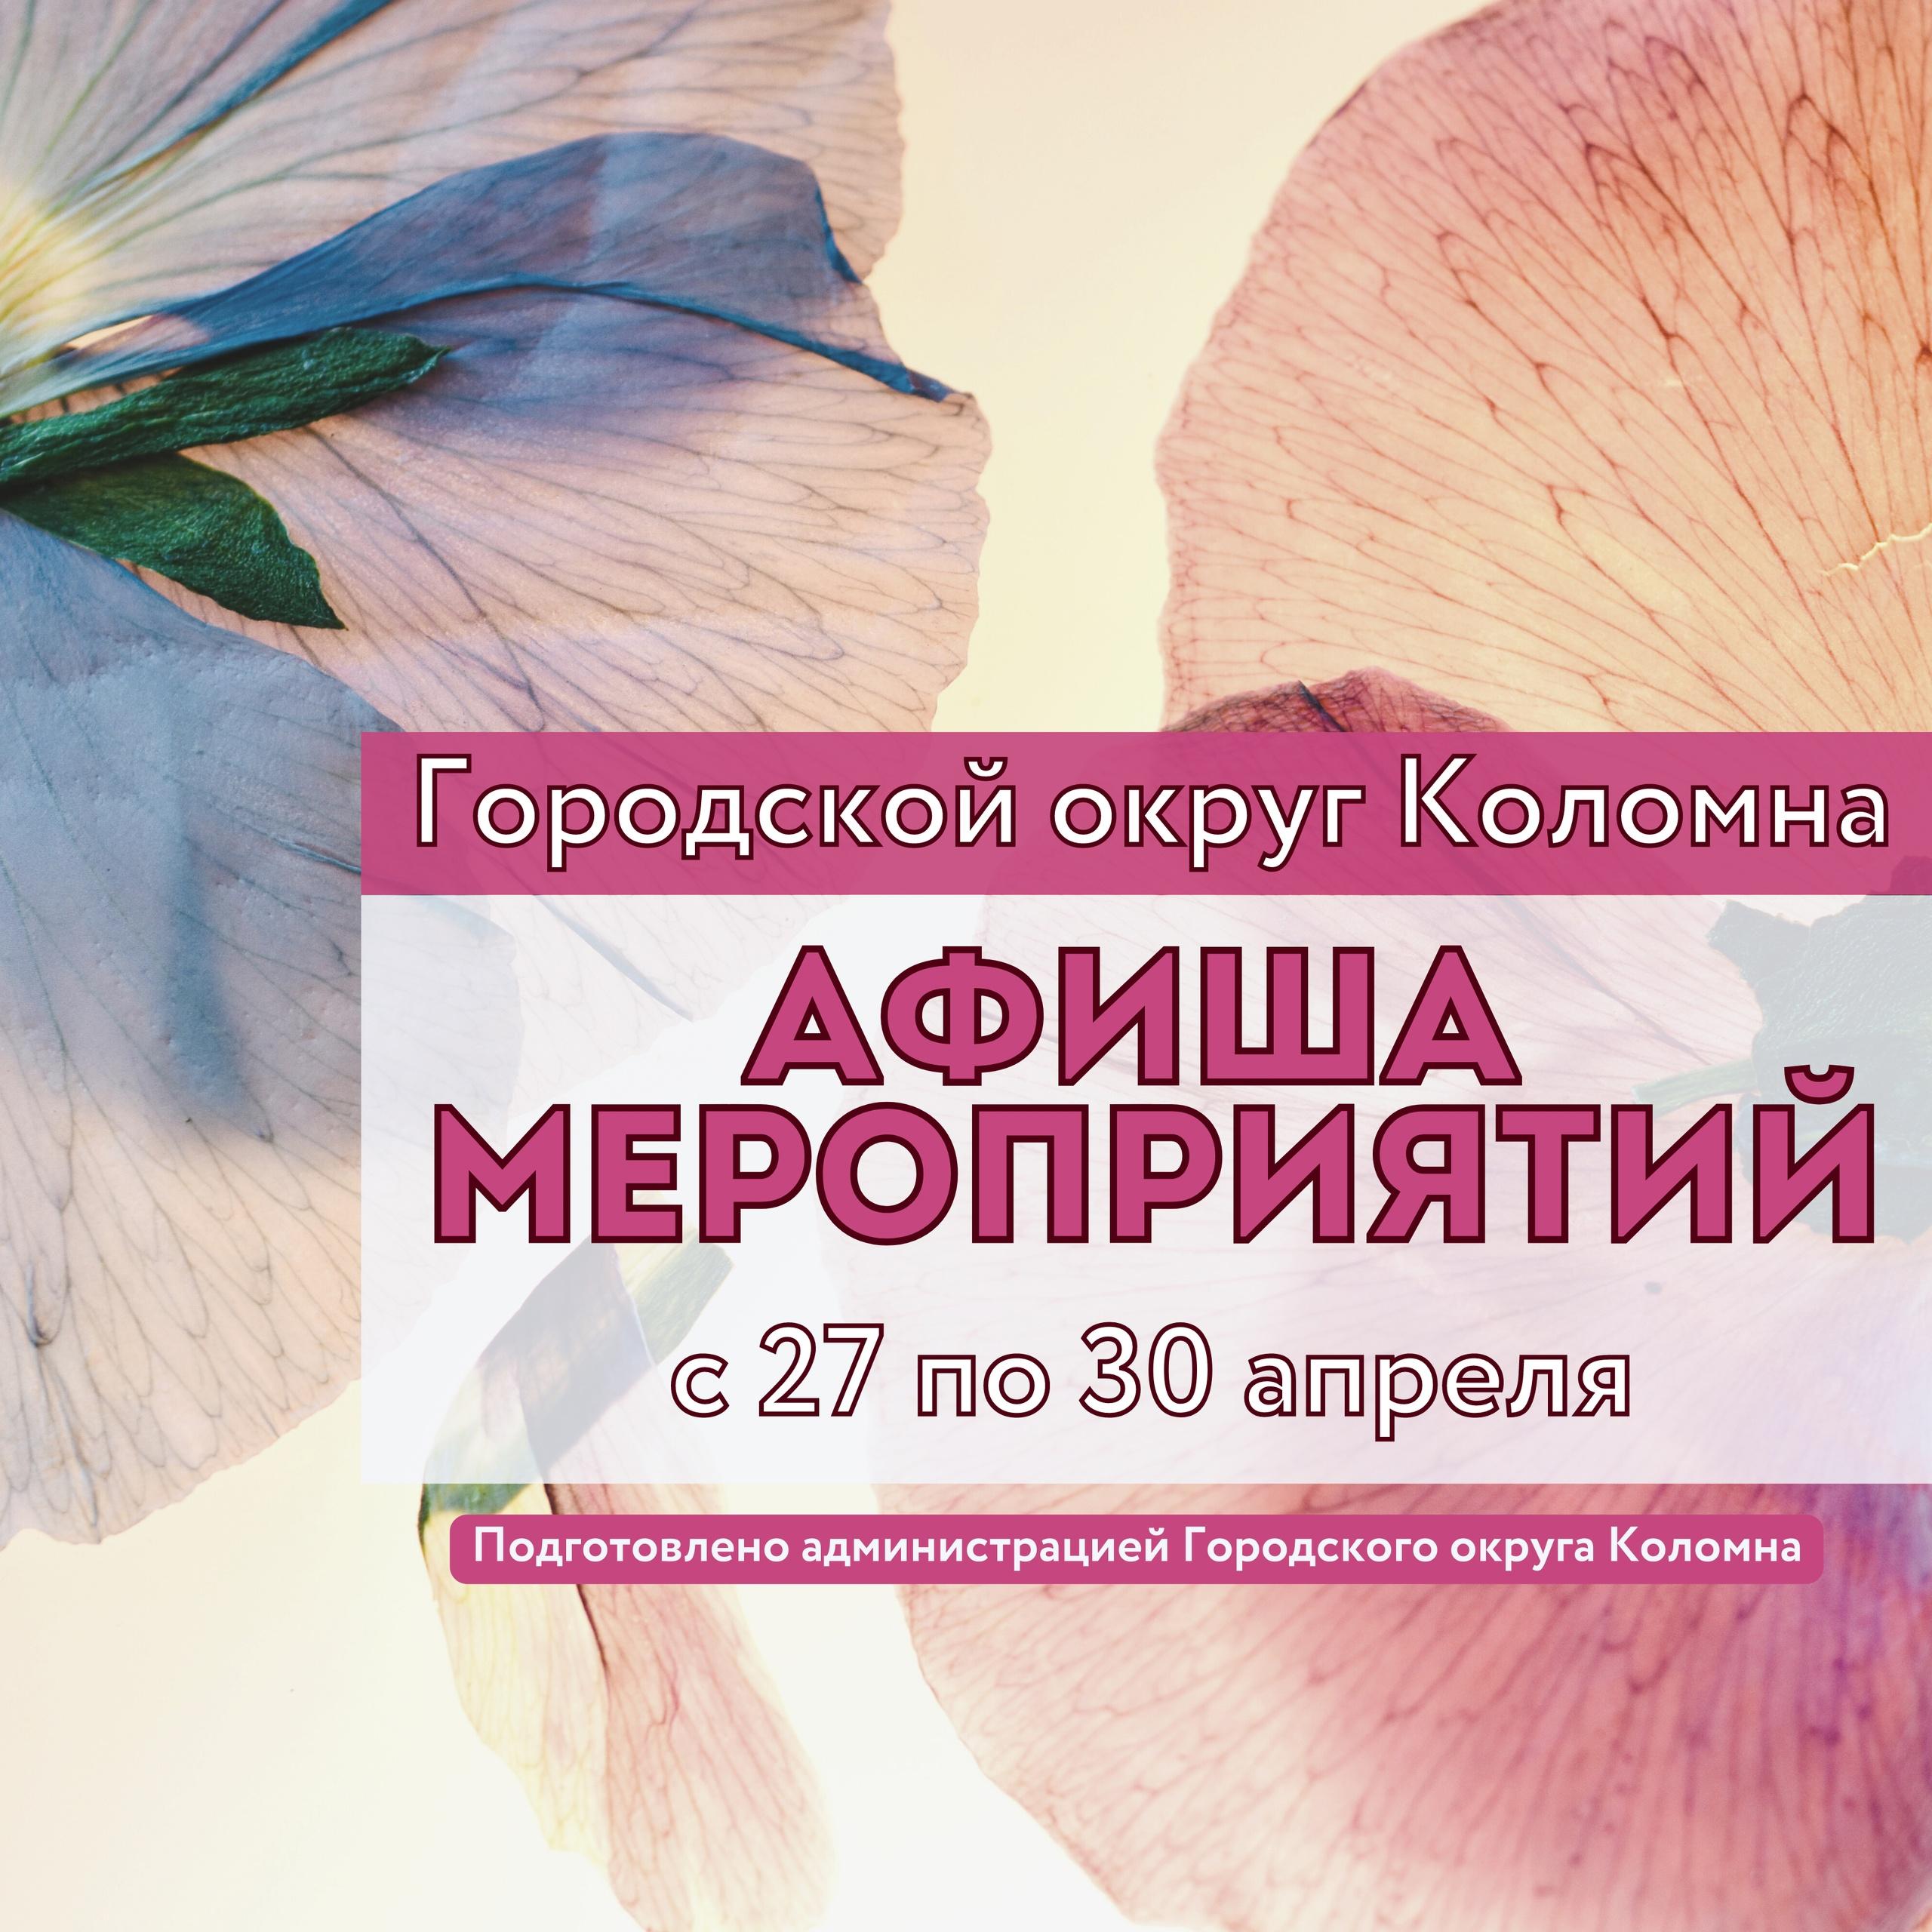 Афиша мероприятий в Городском округе Коломна с 27 по 30 апреля